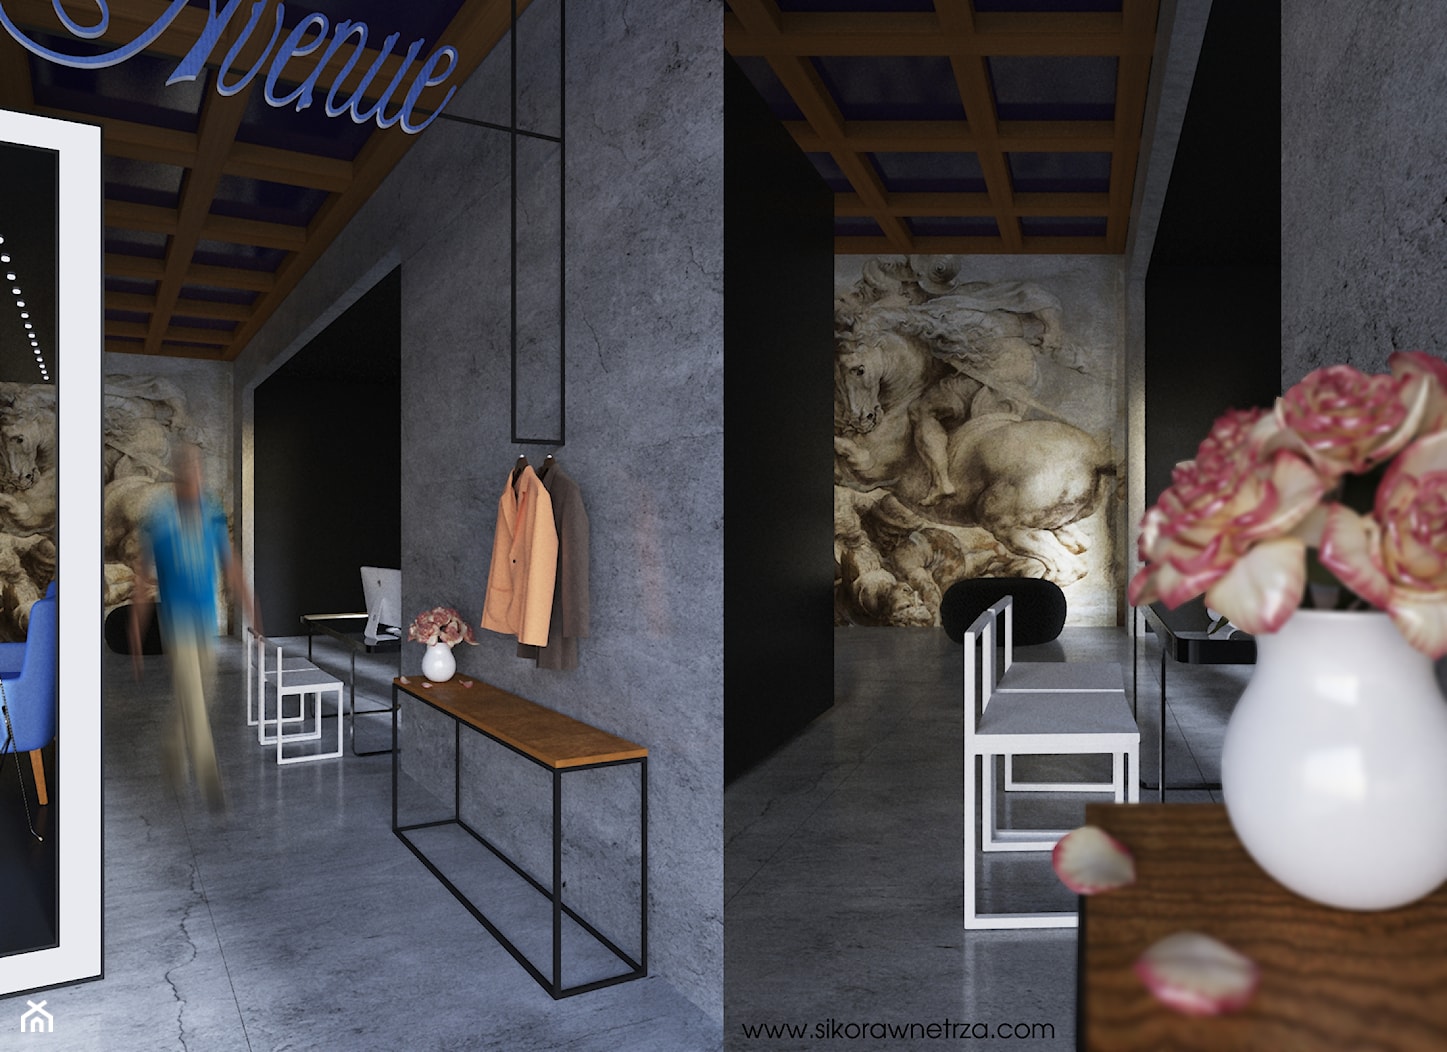 47 AVENUE BUTIK - Wnętrza publiczne, styl minimalistyczny - zdjęcie od SIKORA WNĘTRZA - Homebook